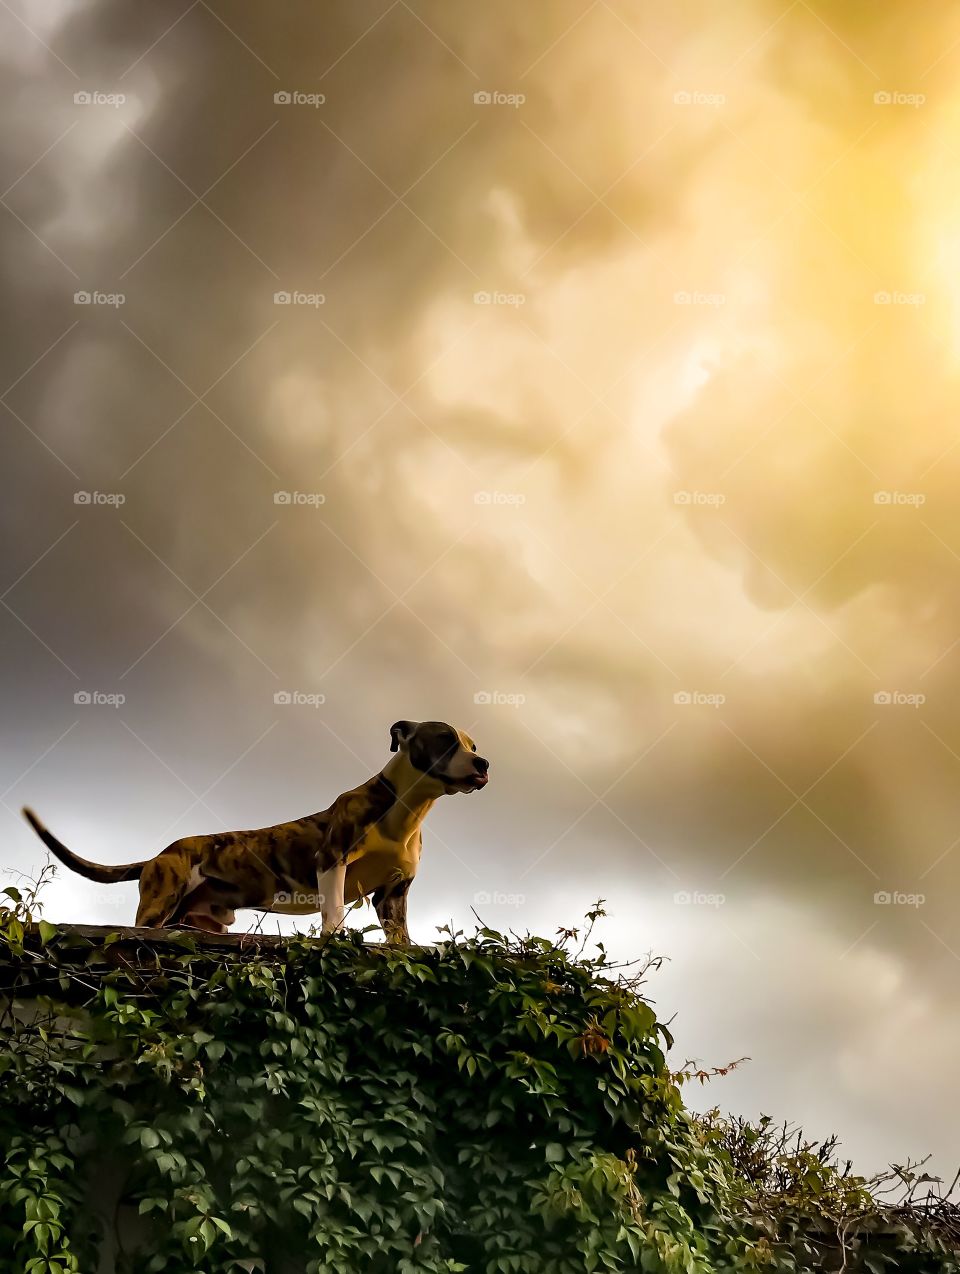 Gaspar es mi mascota y esa es su posición de alerta es un perro adoptado y mi mejor amigo al fondo de la foto se ve la tormenta y el reflejo del sol en las nubes crea un hermoso paisaje que enmarca la figura del perro guardián valiente leal amigable